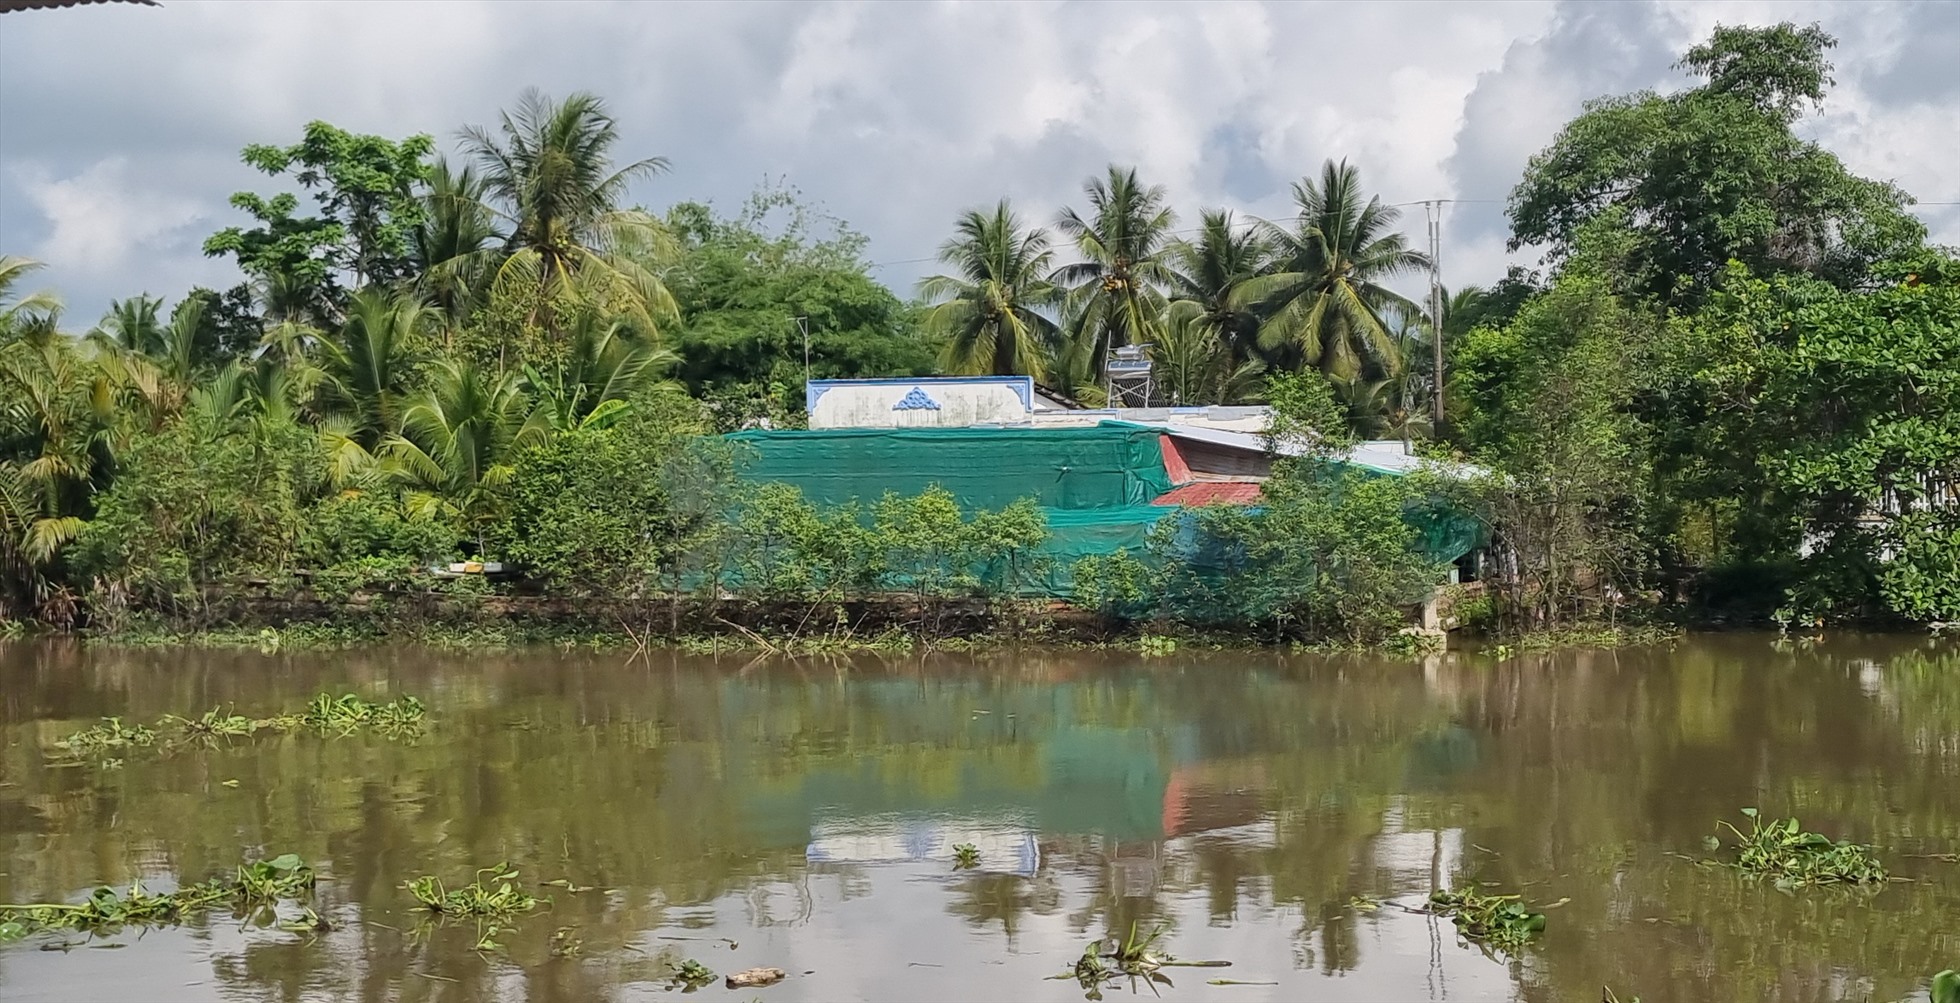 Nhà ở cách 1 con sông lớn gần 100m vẫn phải che chắn bụi từ nhà máy xay xát lúc Phong Phú. Ảnh: Hoàng Lộc